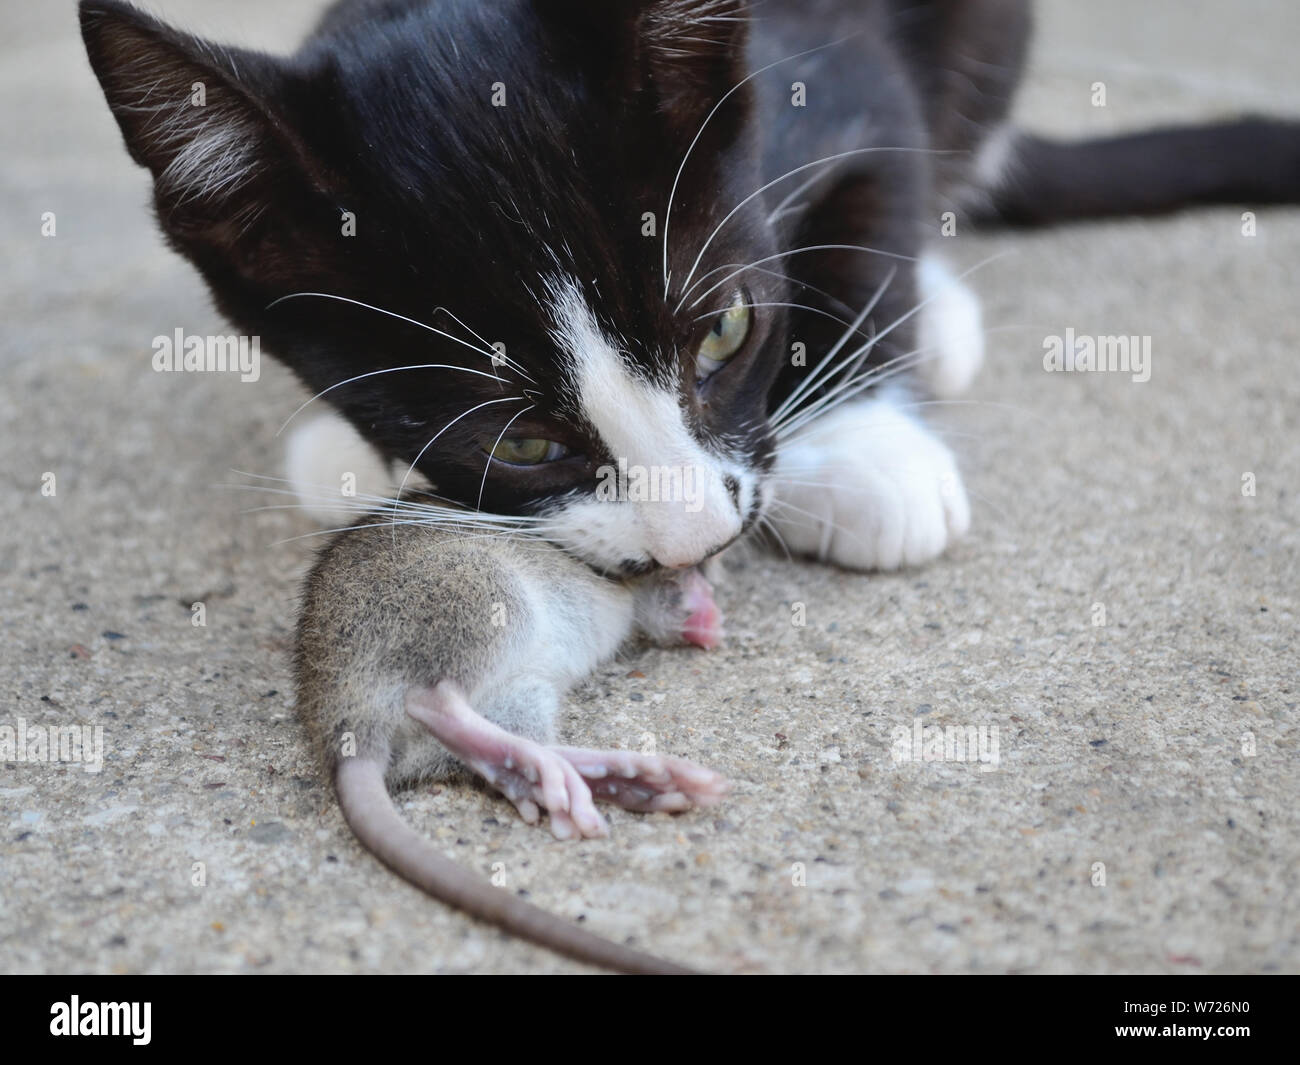 gatito de 3 meses comiendo rata joven. Cadena alimenticia animal, Felis catus Foto de stock